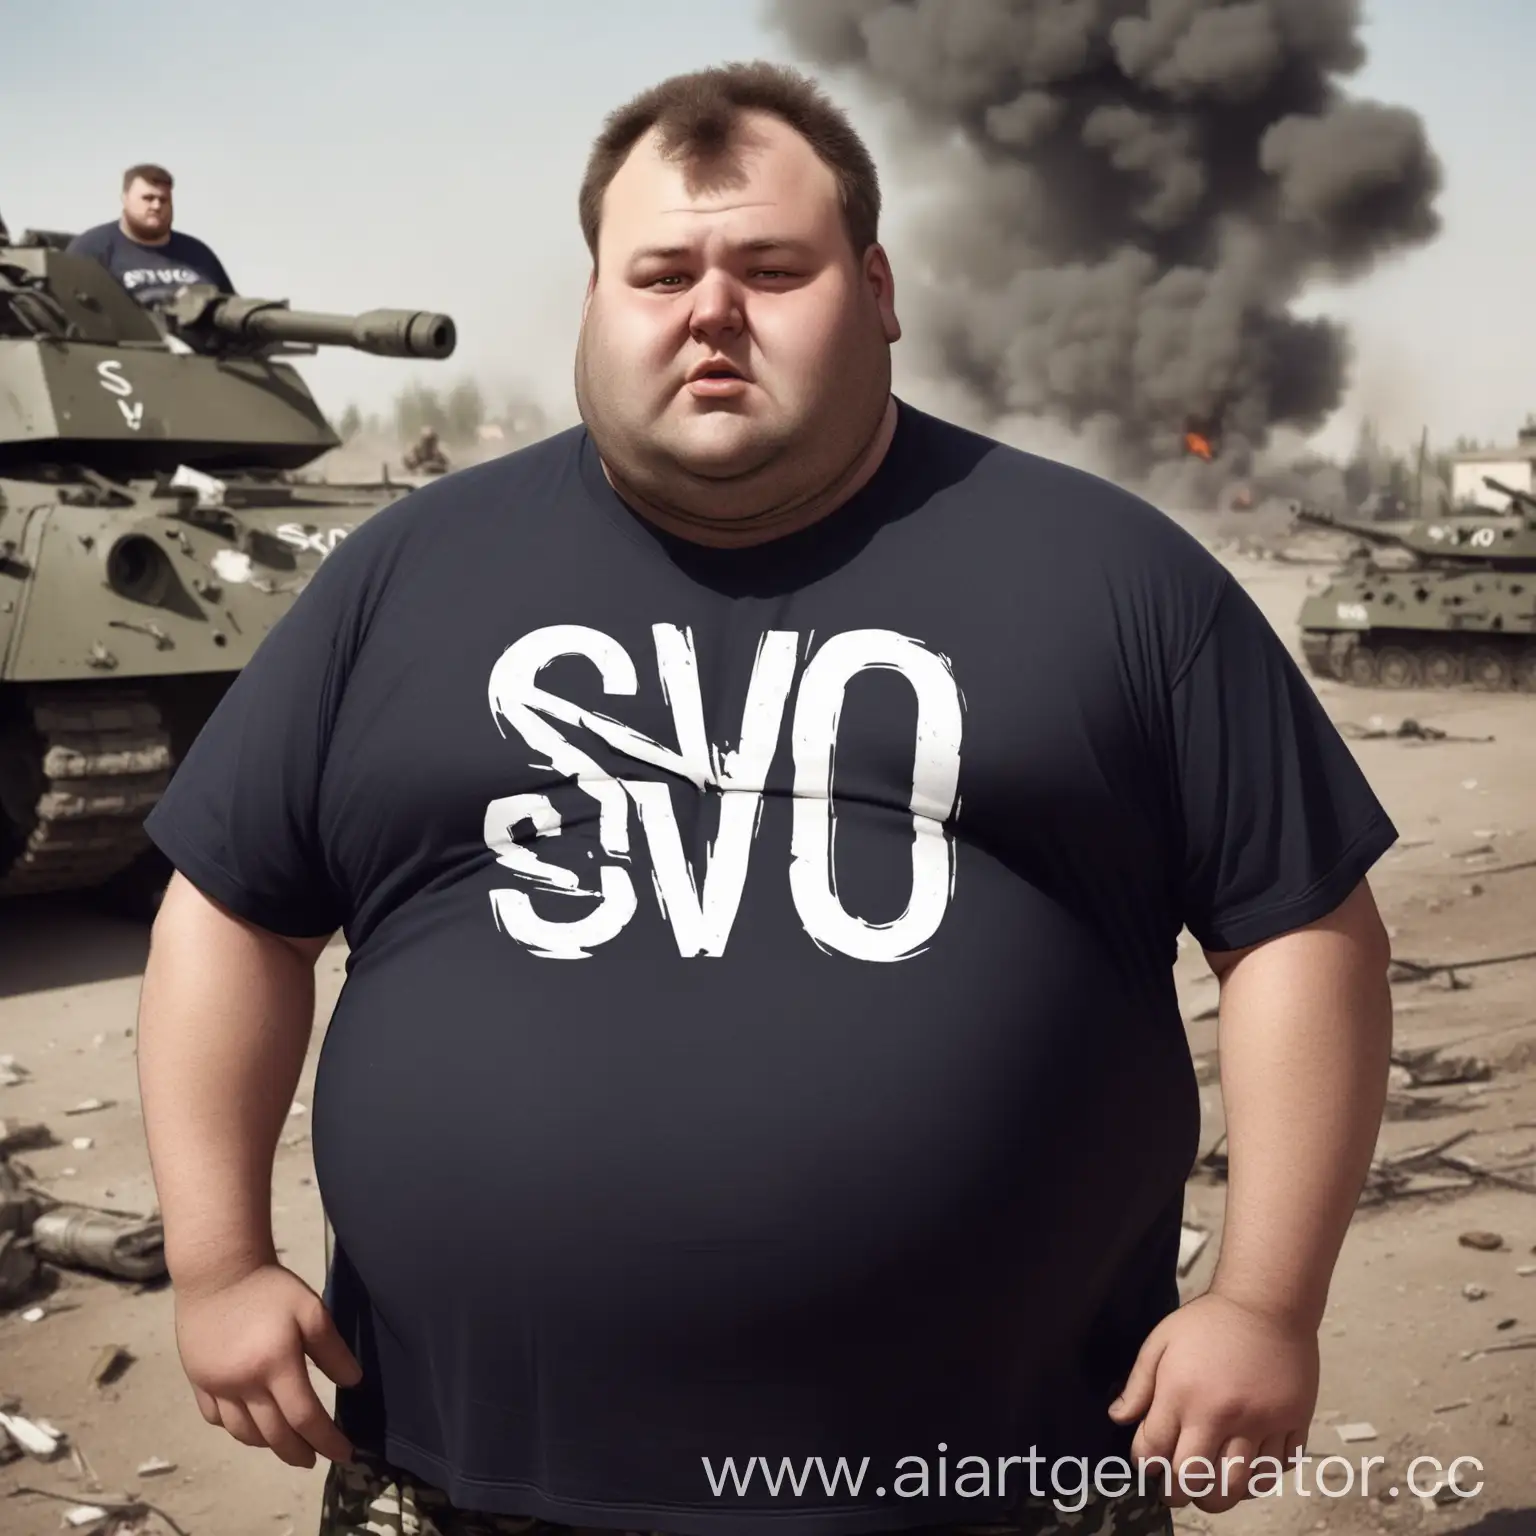 Жирный, мерзкий мужик в футболке с надписью "SVO" на войне